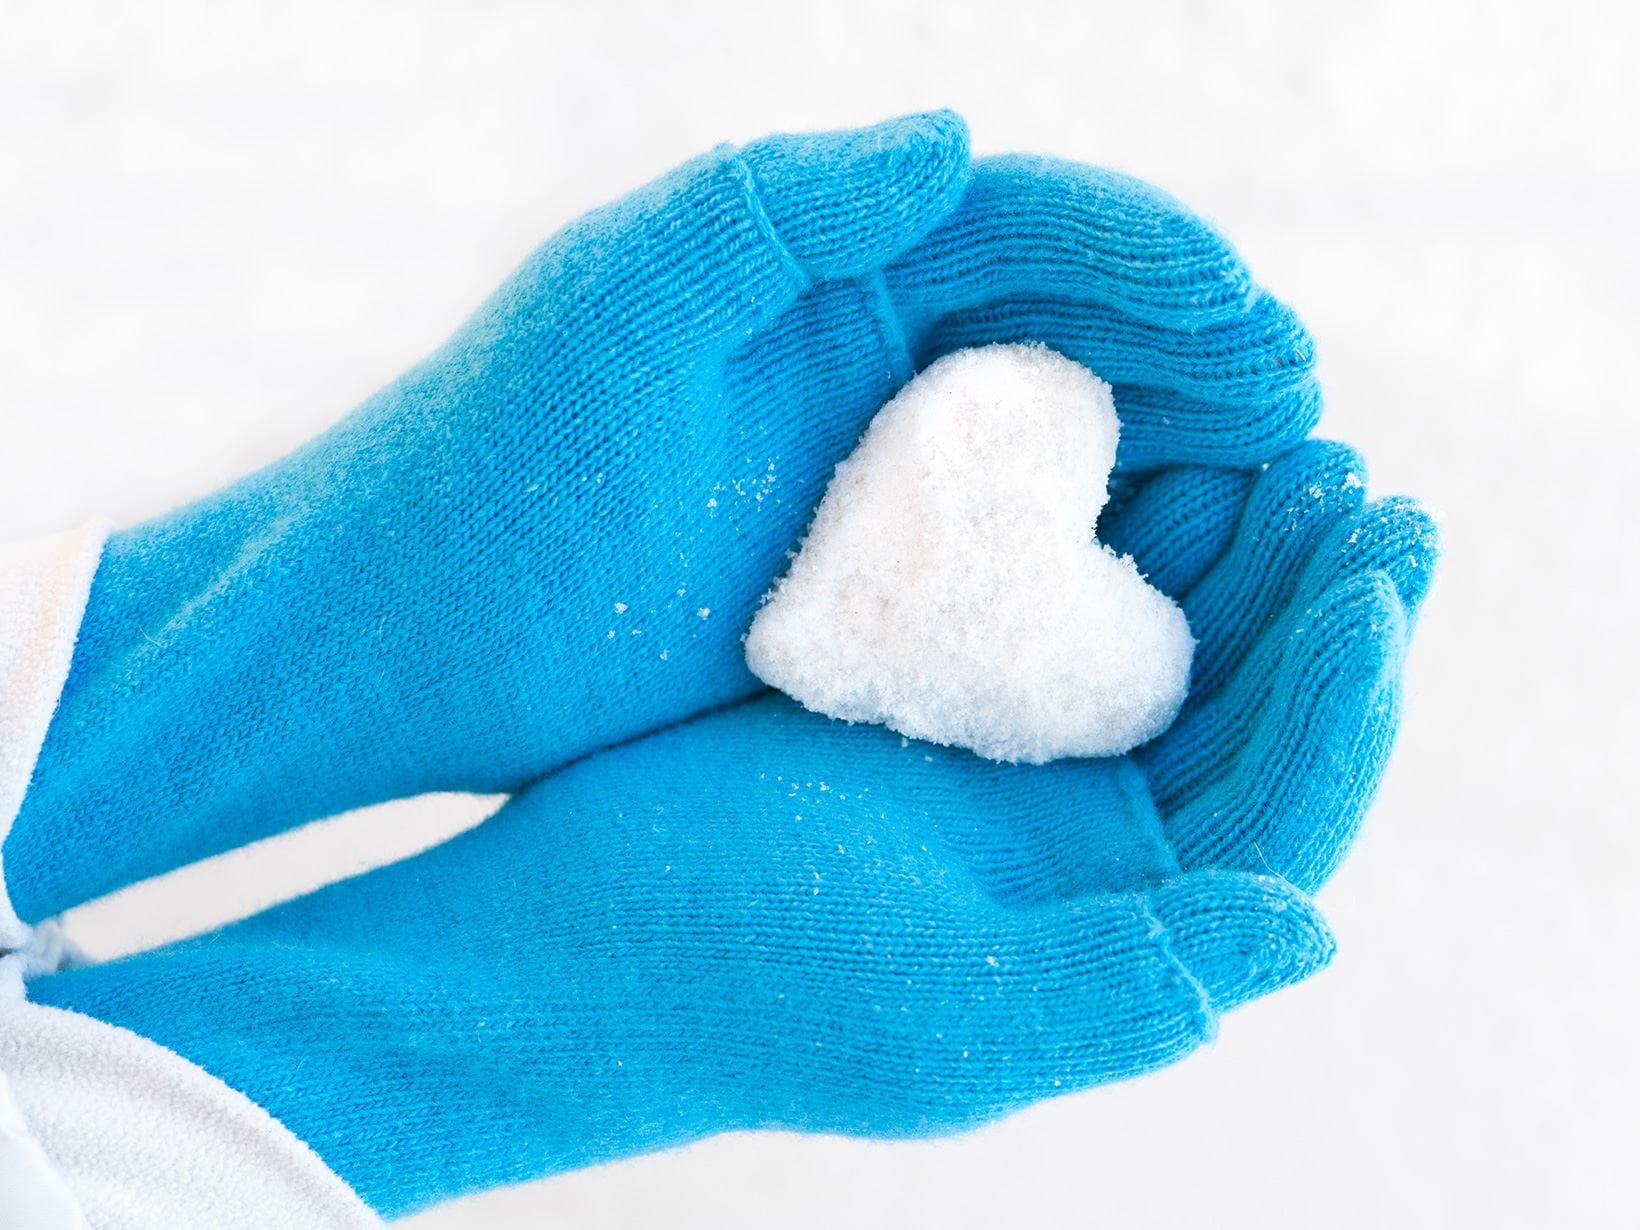 los-guantes-protegen-tus-manos-del-frio